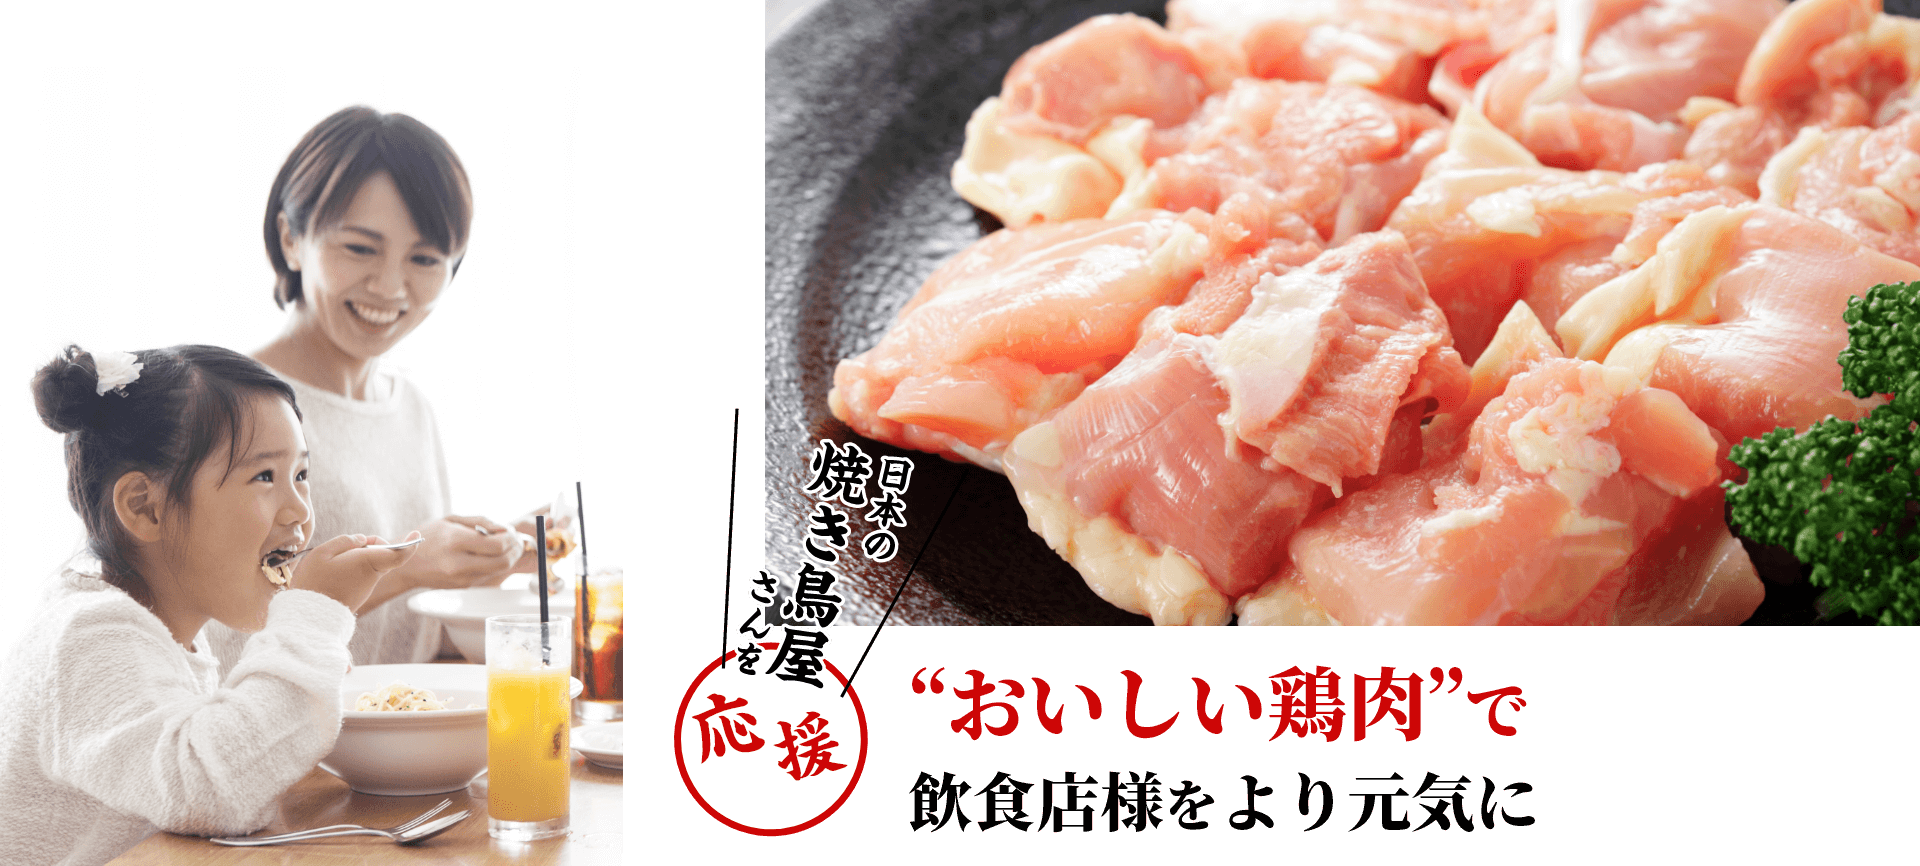 日本の焼き鳥屋さんを応援 美味しい鶏肉で飲食店様をより元気に